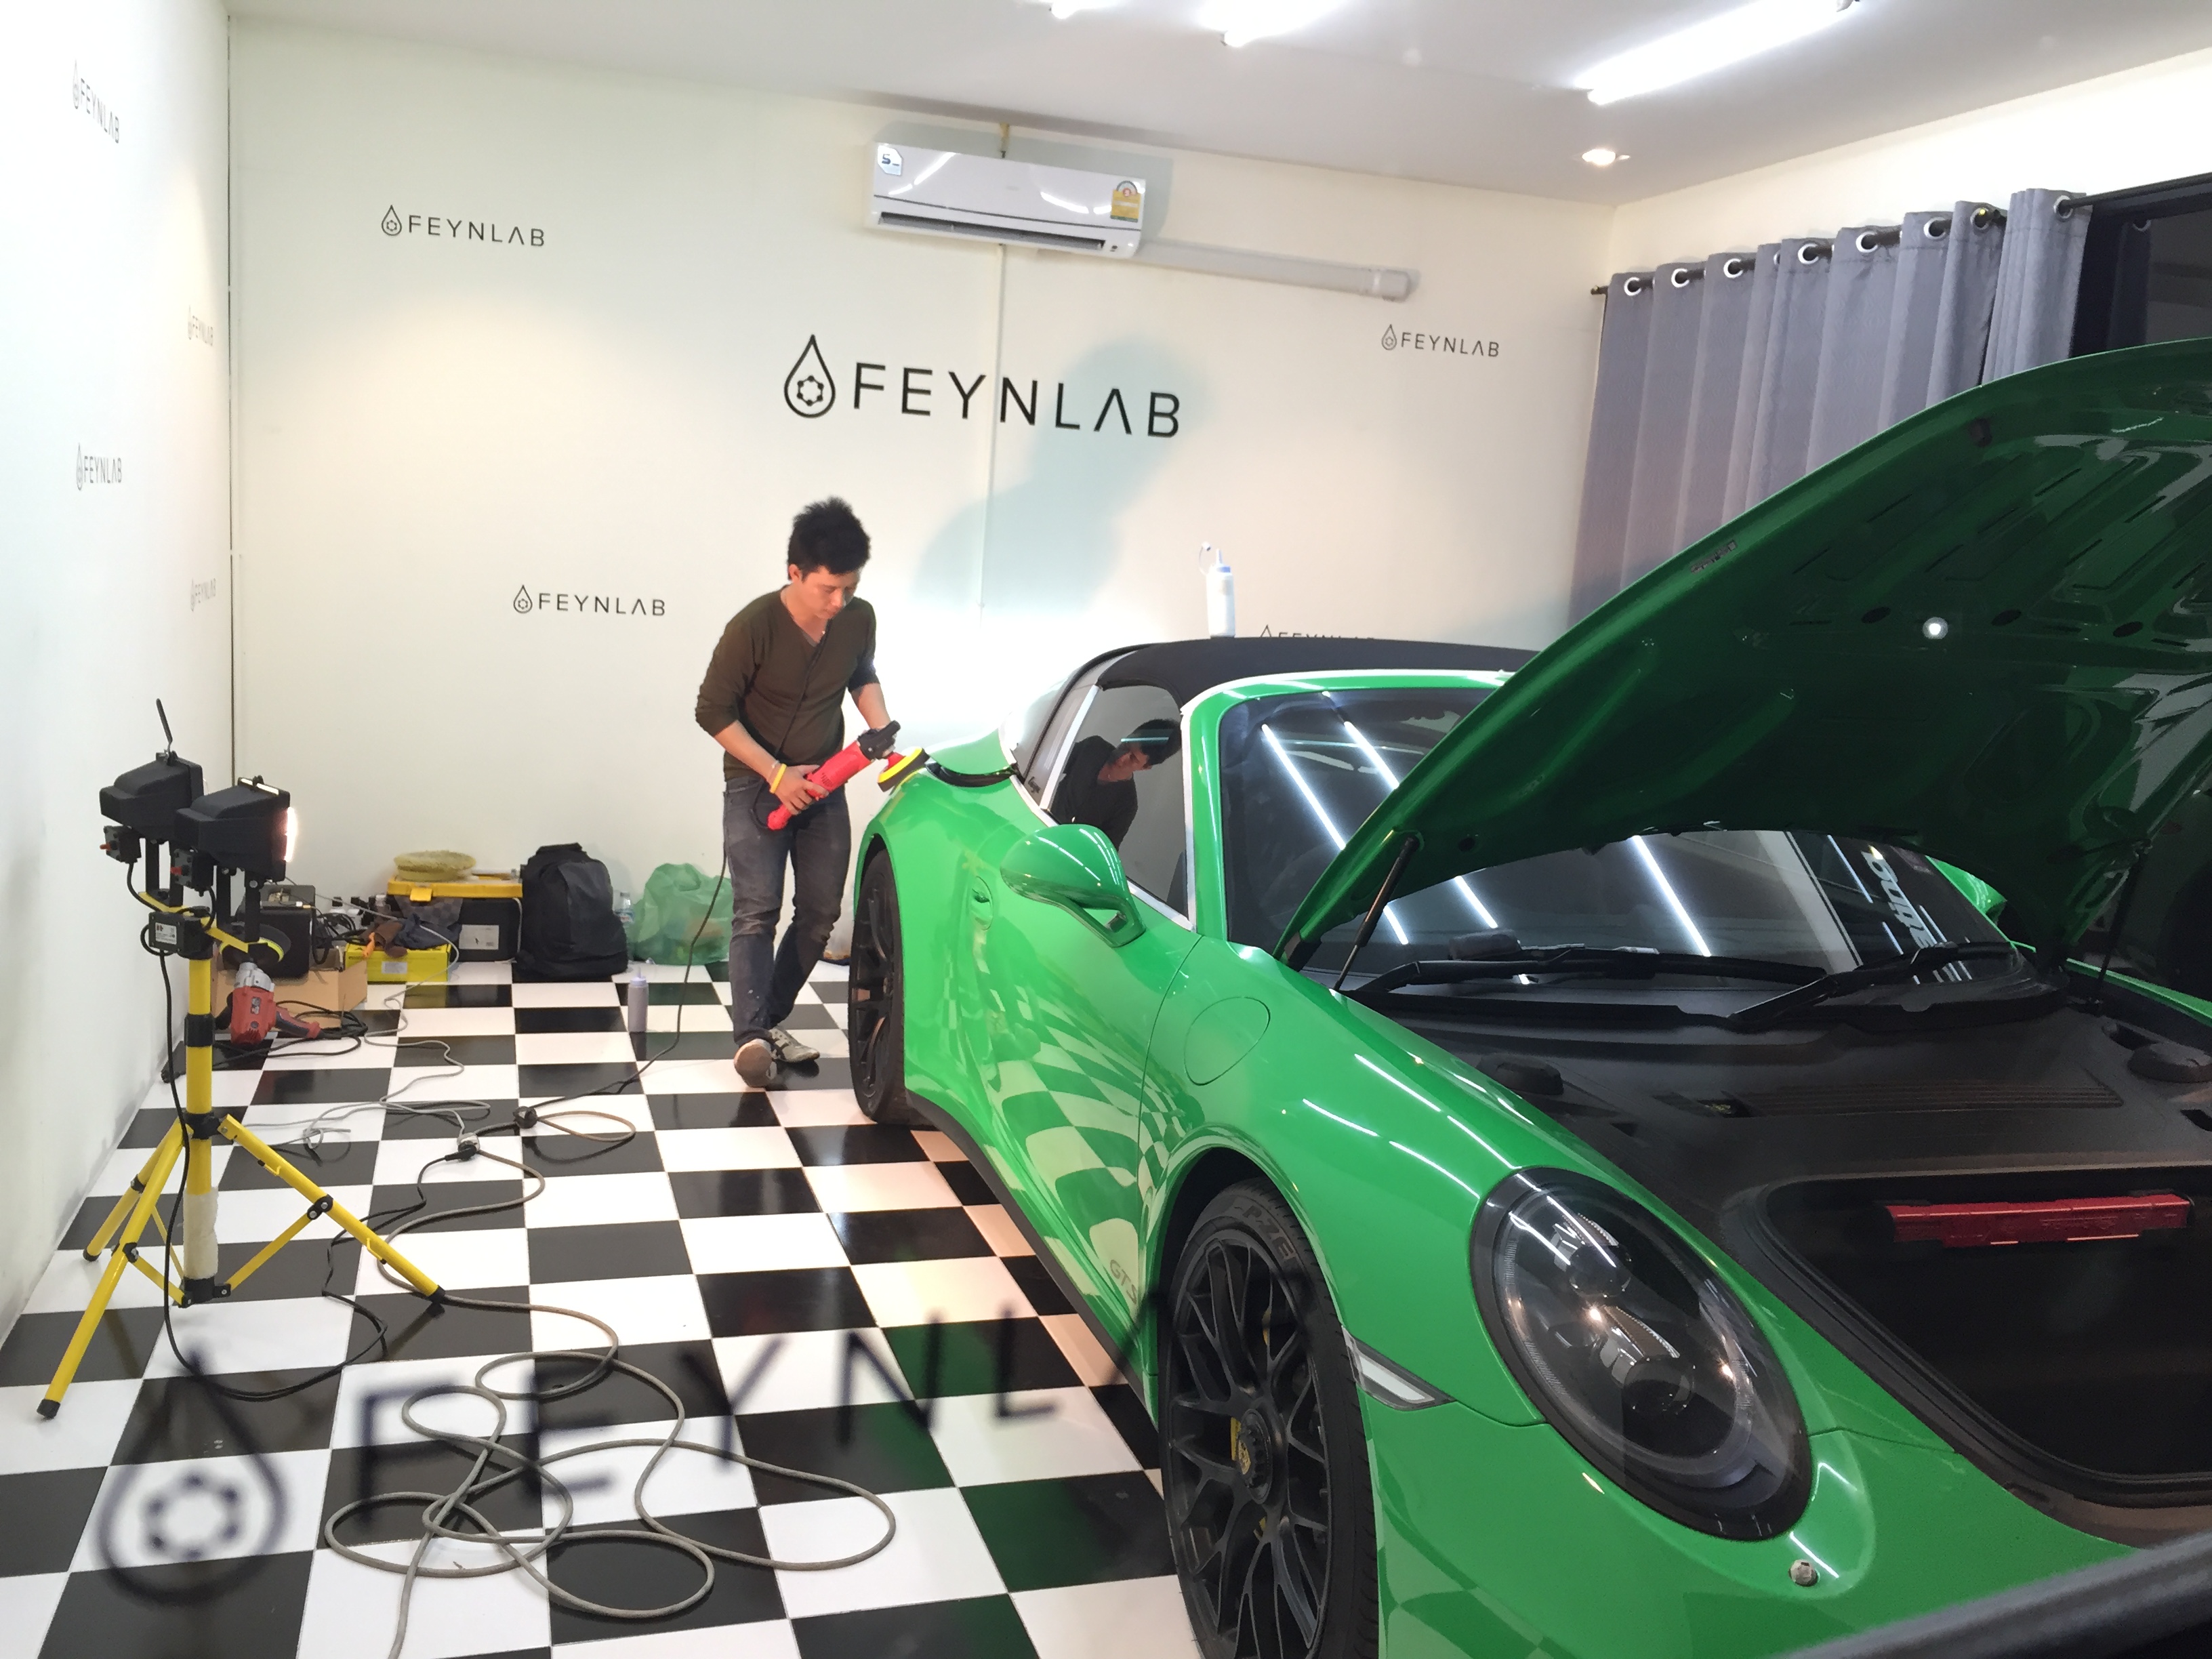 Green Porsche Garage | Feynlab https://www.feynlab.com/ - FEYNLAB